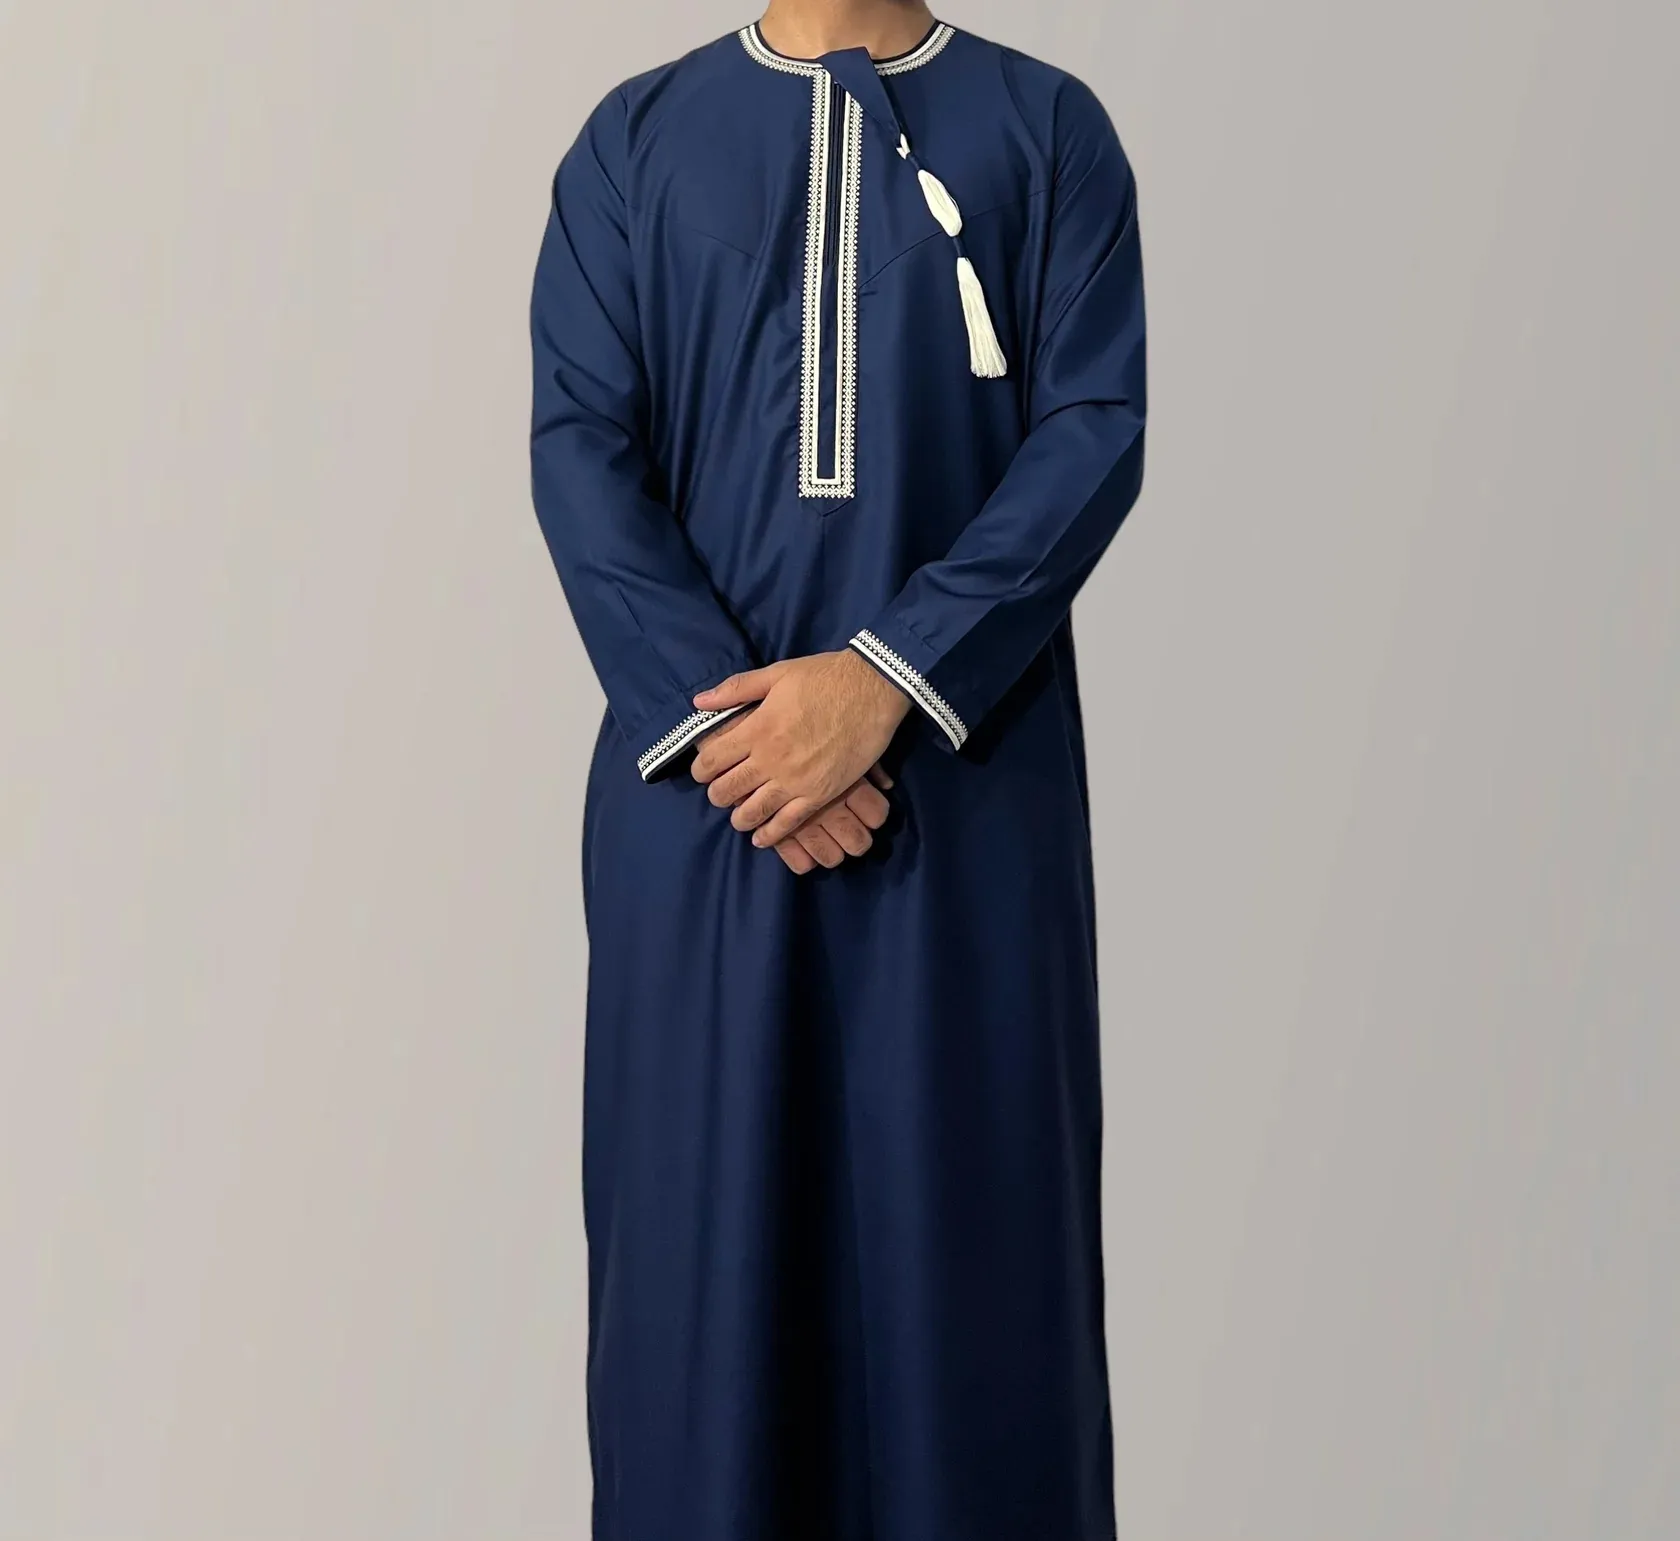 Arap Daffah Omani narin nakış Thobes islam giyim düz renk Kaftan jubbah erkek thobe müslüman thobe erkekler için